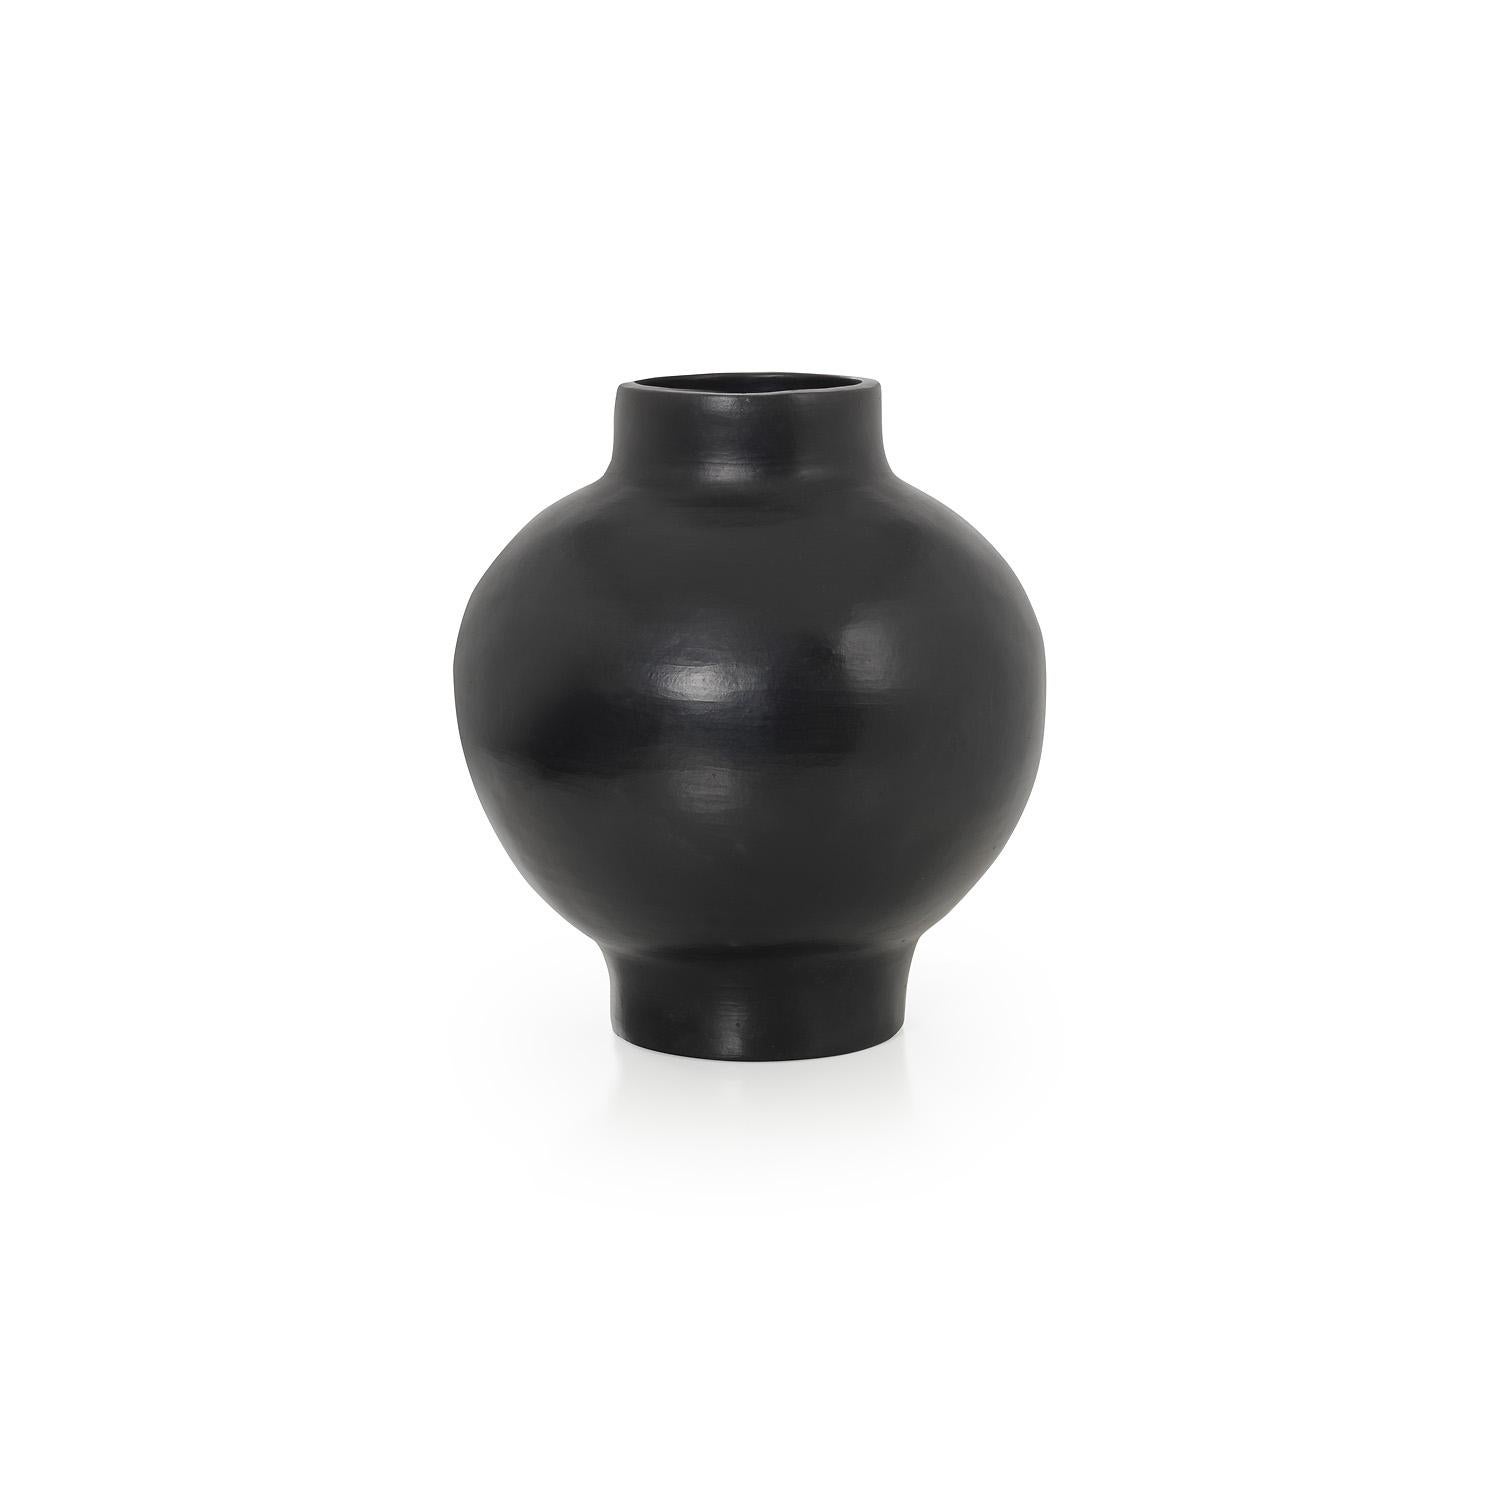 Große Vase von Sebastian Herkner
MATERIALIEN: Hitzebeständige schwarze Keramik. 
Technik: Glasiert. Im Ofen gegart und mit Halbedelsteinen poliert. 
Abmessungen: Durchmesser 31 cm x H 34 cm 
Erhältlich in den Größen small und mini.

Diese